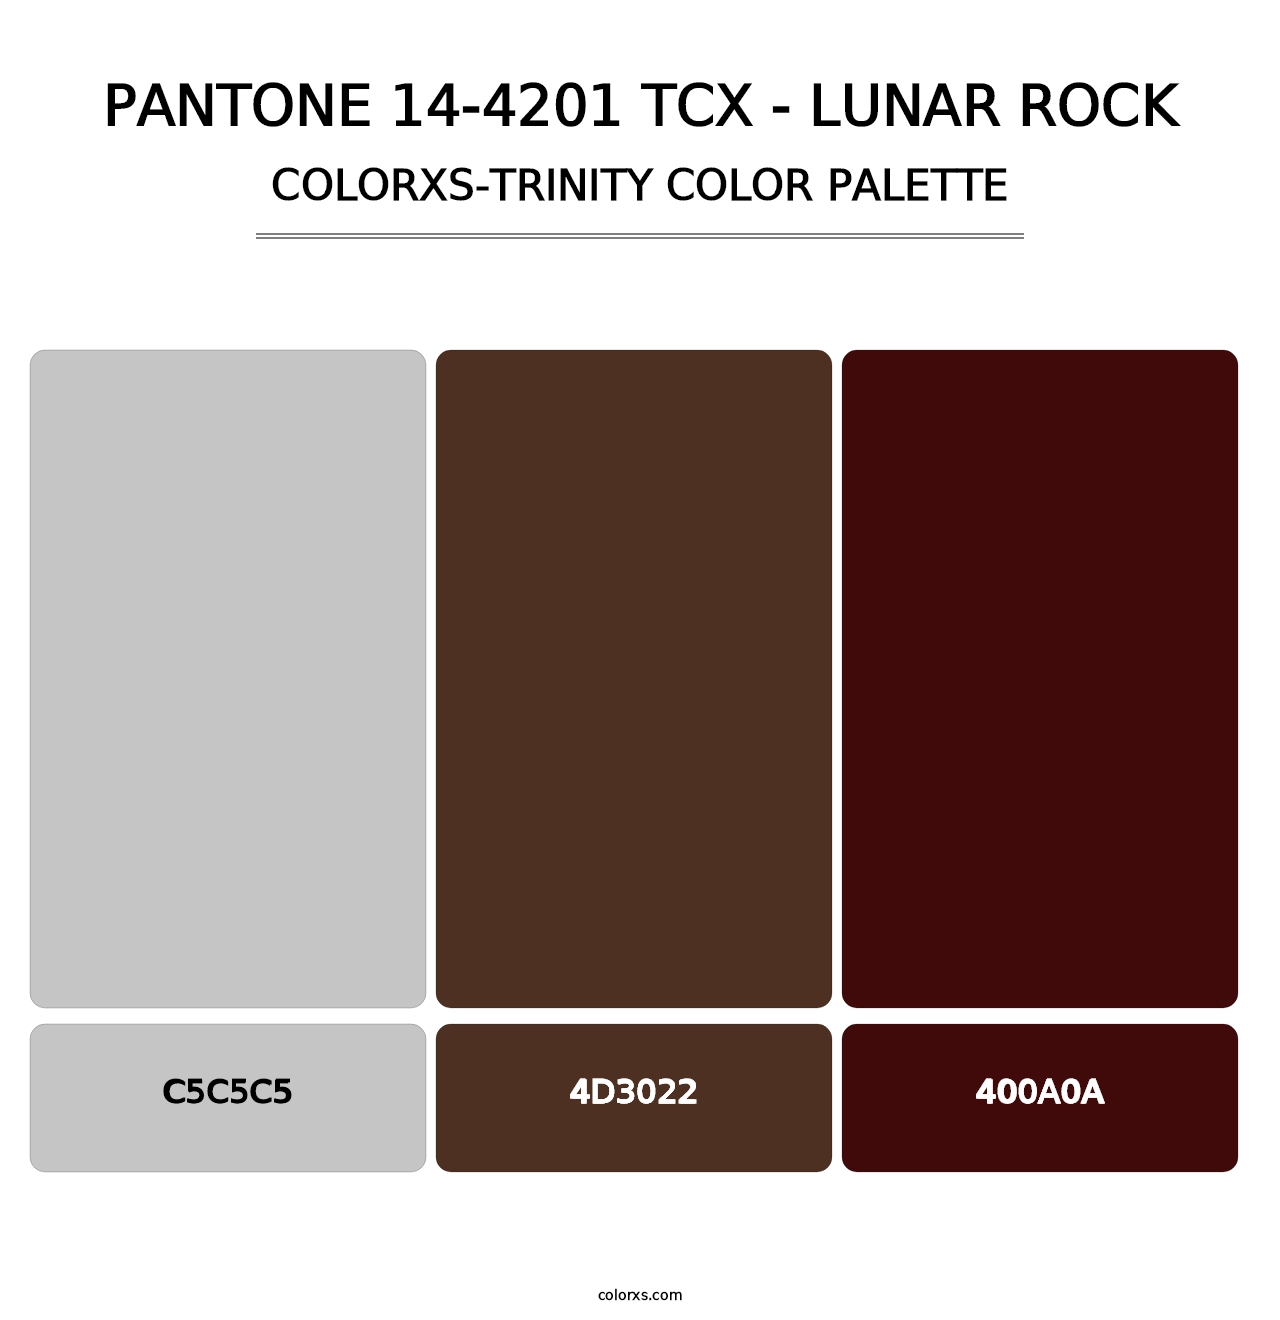 PANTONE 14-4201 TCX - Lunar Rock - Colorxs Trinity Palette